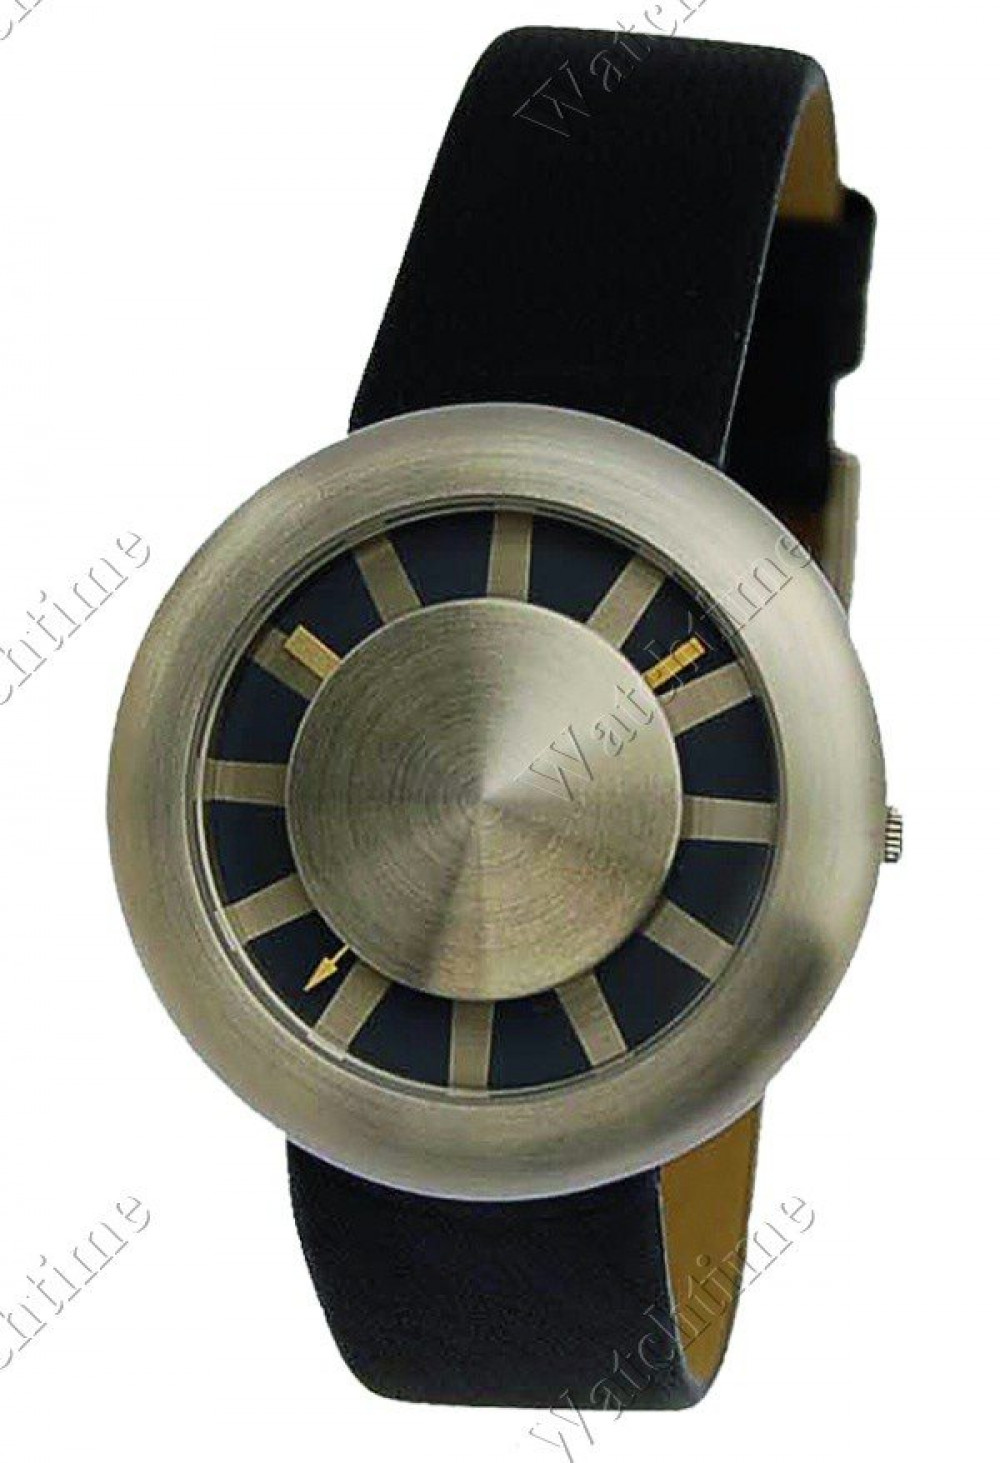 Zegarek firmy Bo-Design, model Canberra